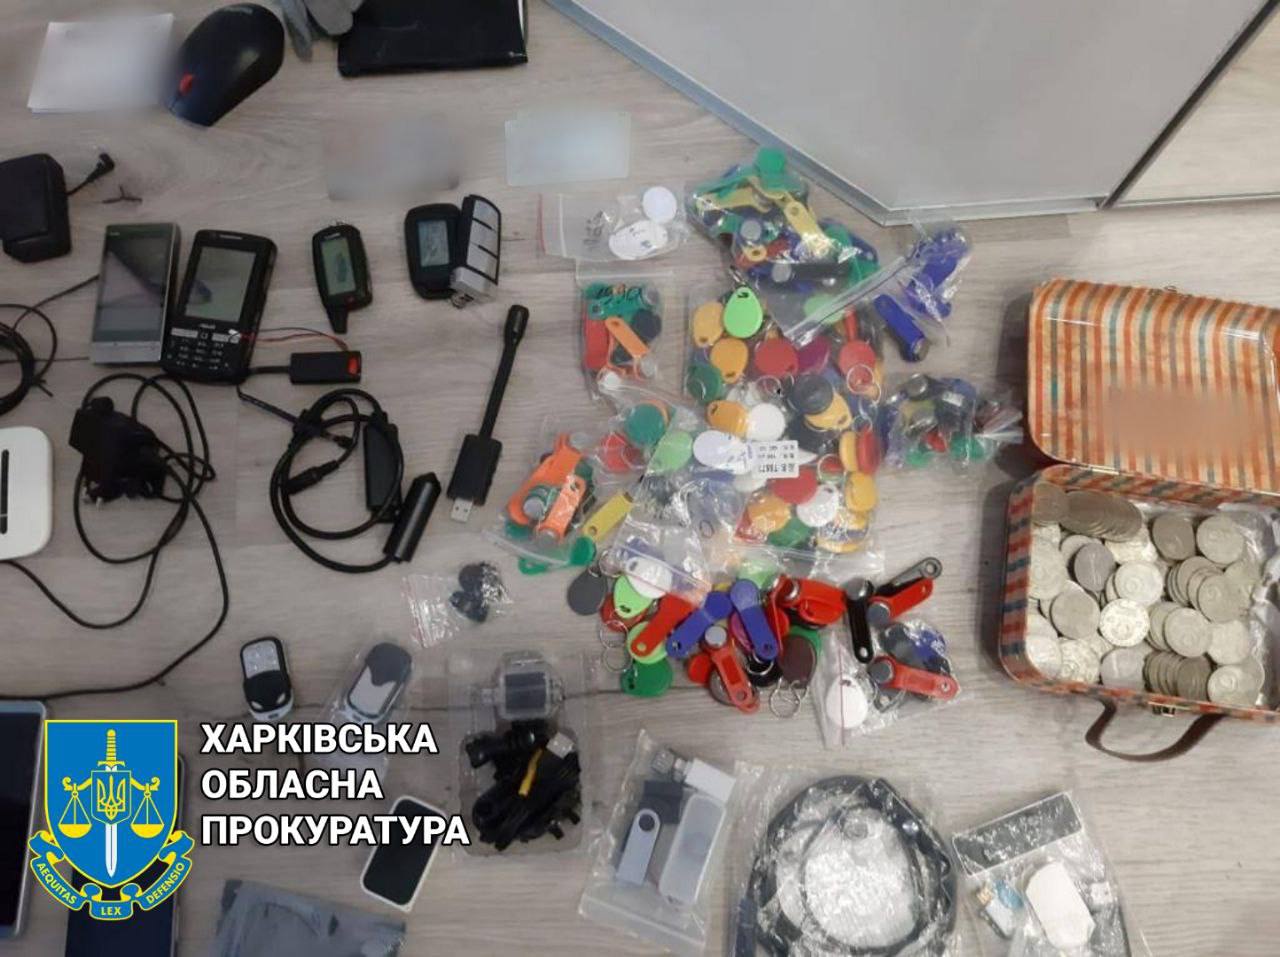 Воровство и разбои на общую сумму более 300 тыс. гривен: В Харькове будут судить организатора преступной группировки